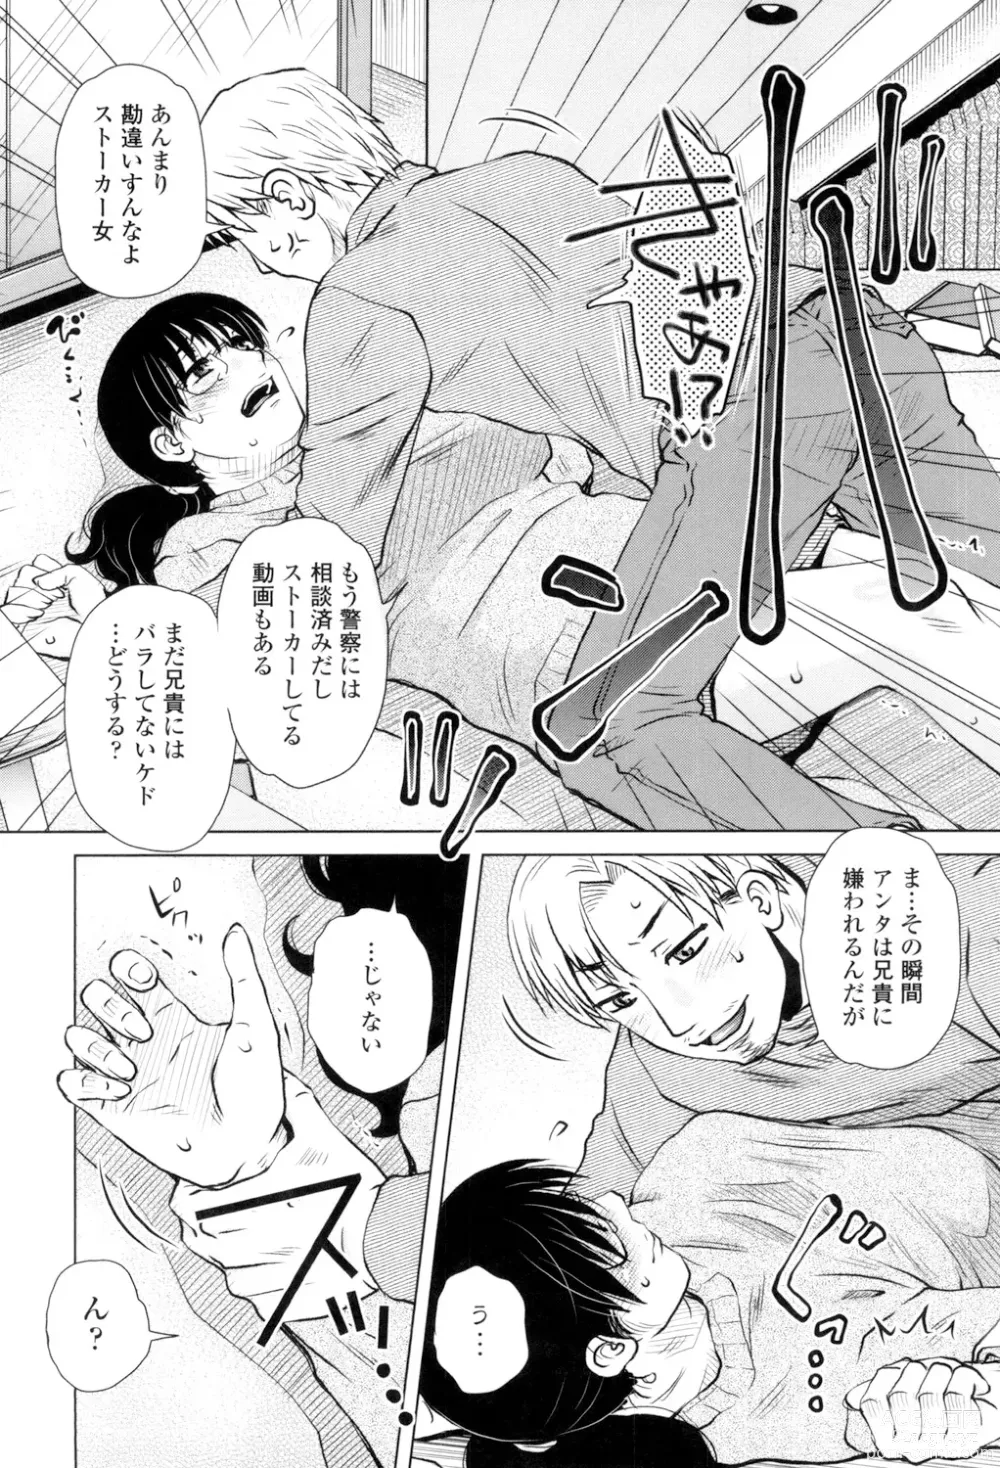 Page 6 of manga Gesu Sex?